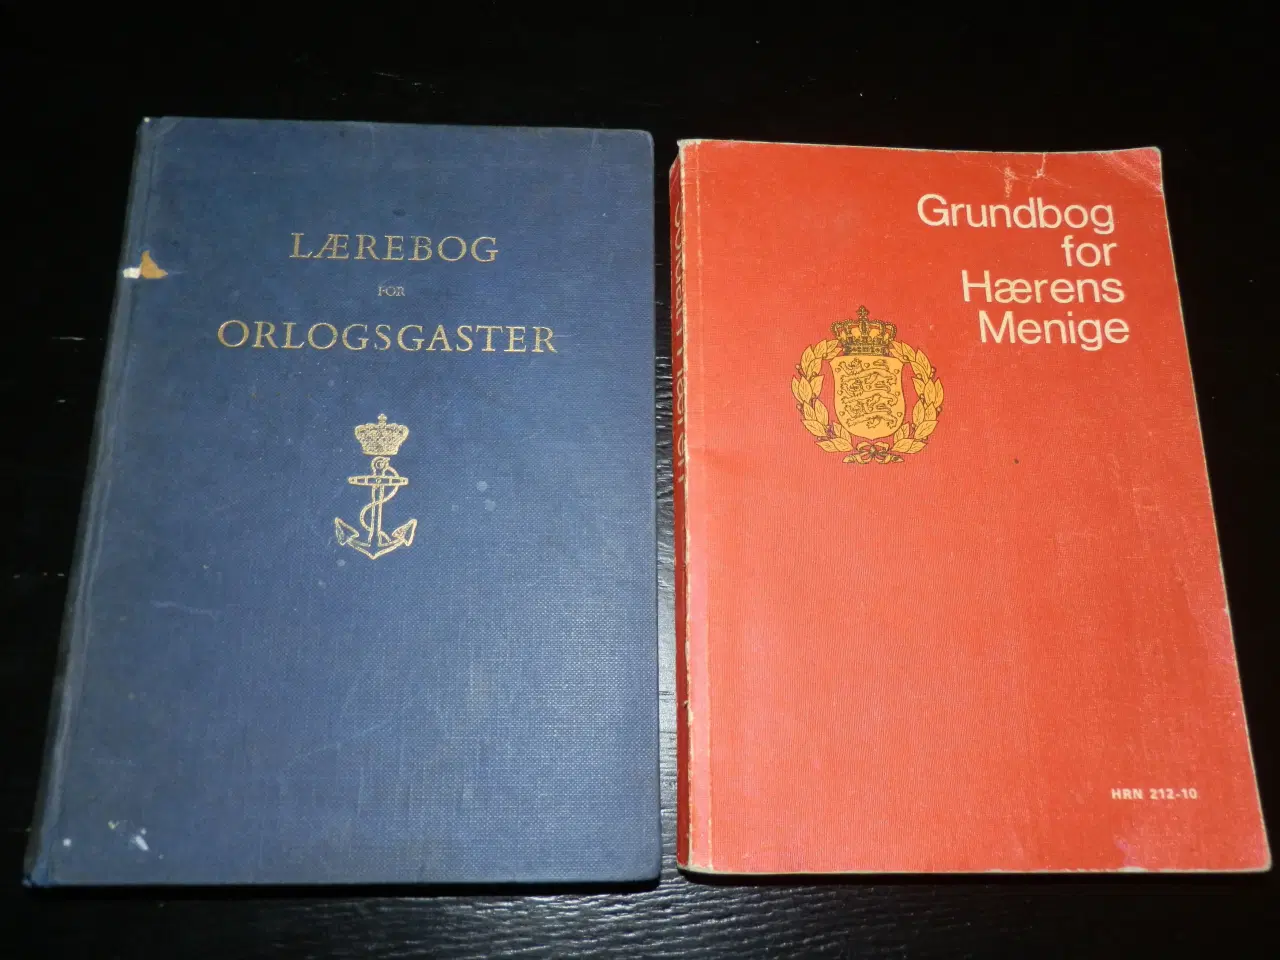 Billede 1 - Lærebøger for Orlogsgaster & Grundbog for Hæren